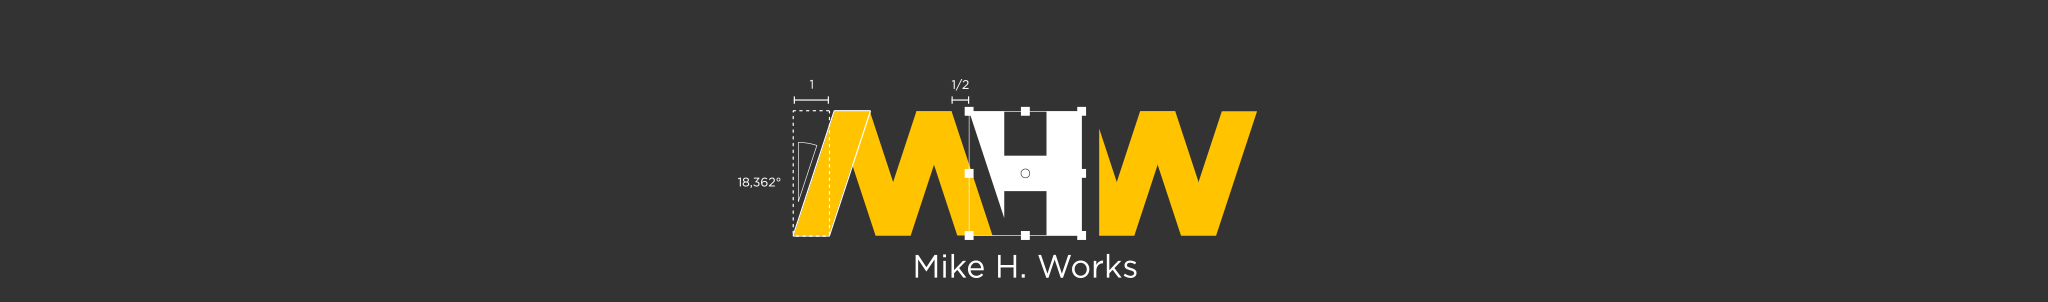 Mike H. Works 的个人资料横幅